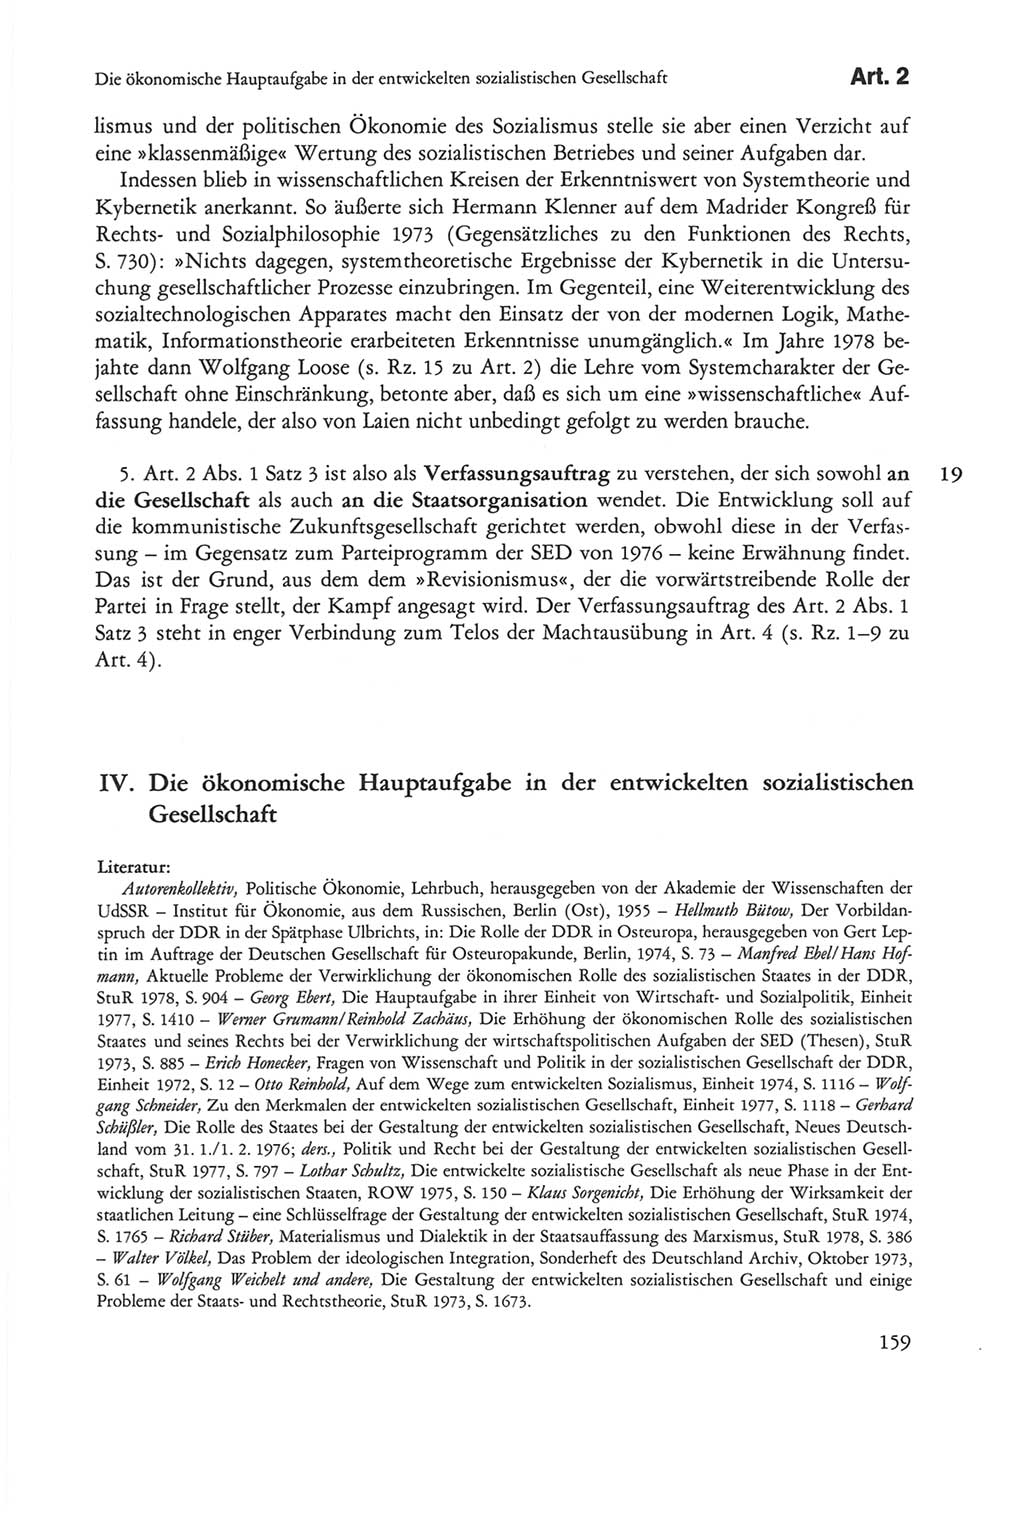 Die sozialistische Verfassung der Deutschen Demokratischen Republik (DDR), Kommentar mit einem Nachtrag 1997, Seite 159 (Soz. Verf. DDR Komm. Nachtr. 1997, S. 159)